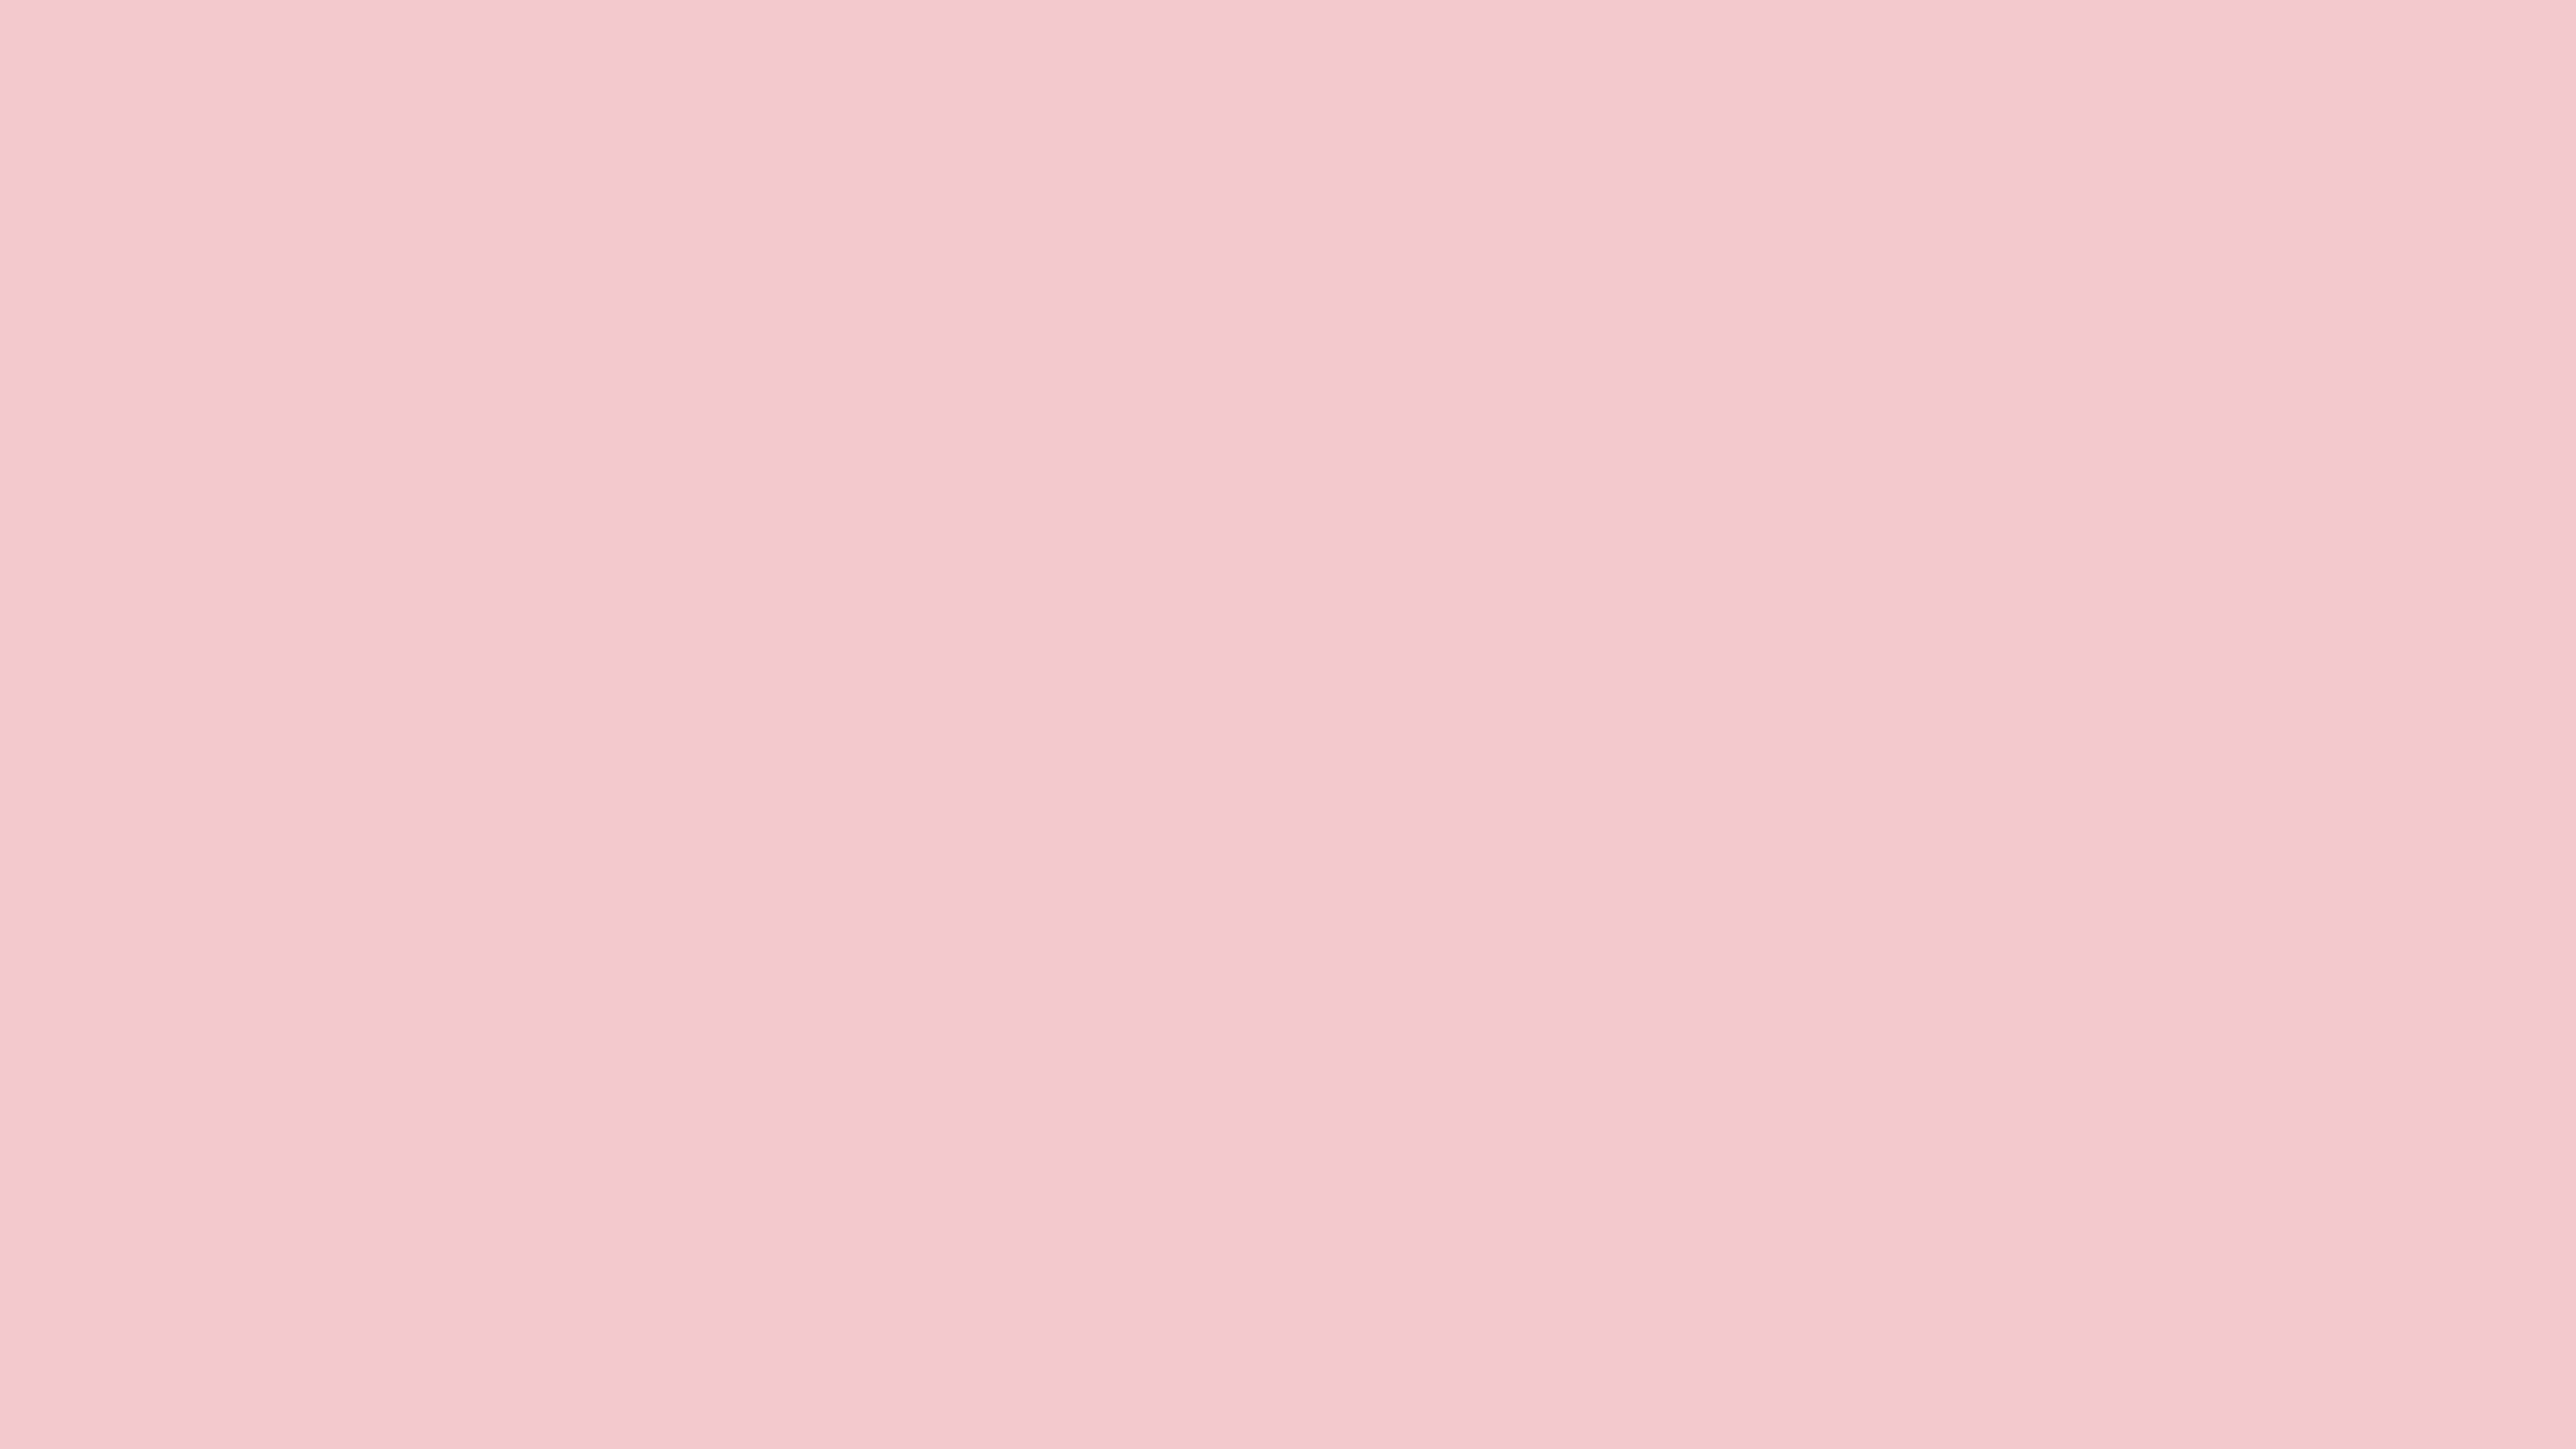 Blushing Senorita Solid Color Background Image | Free Image Generator